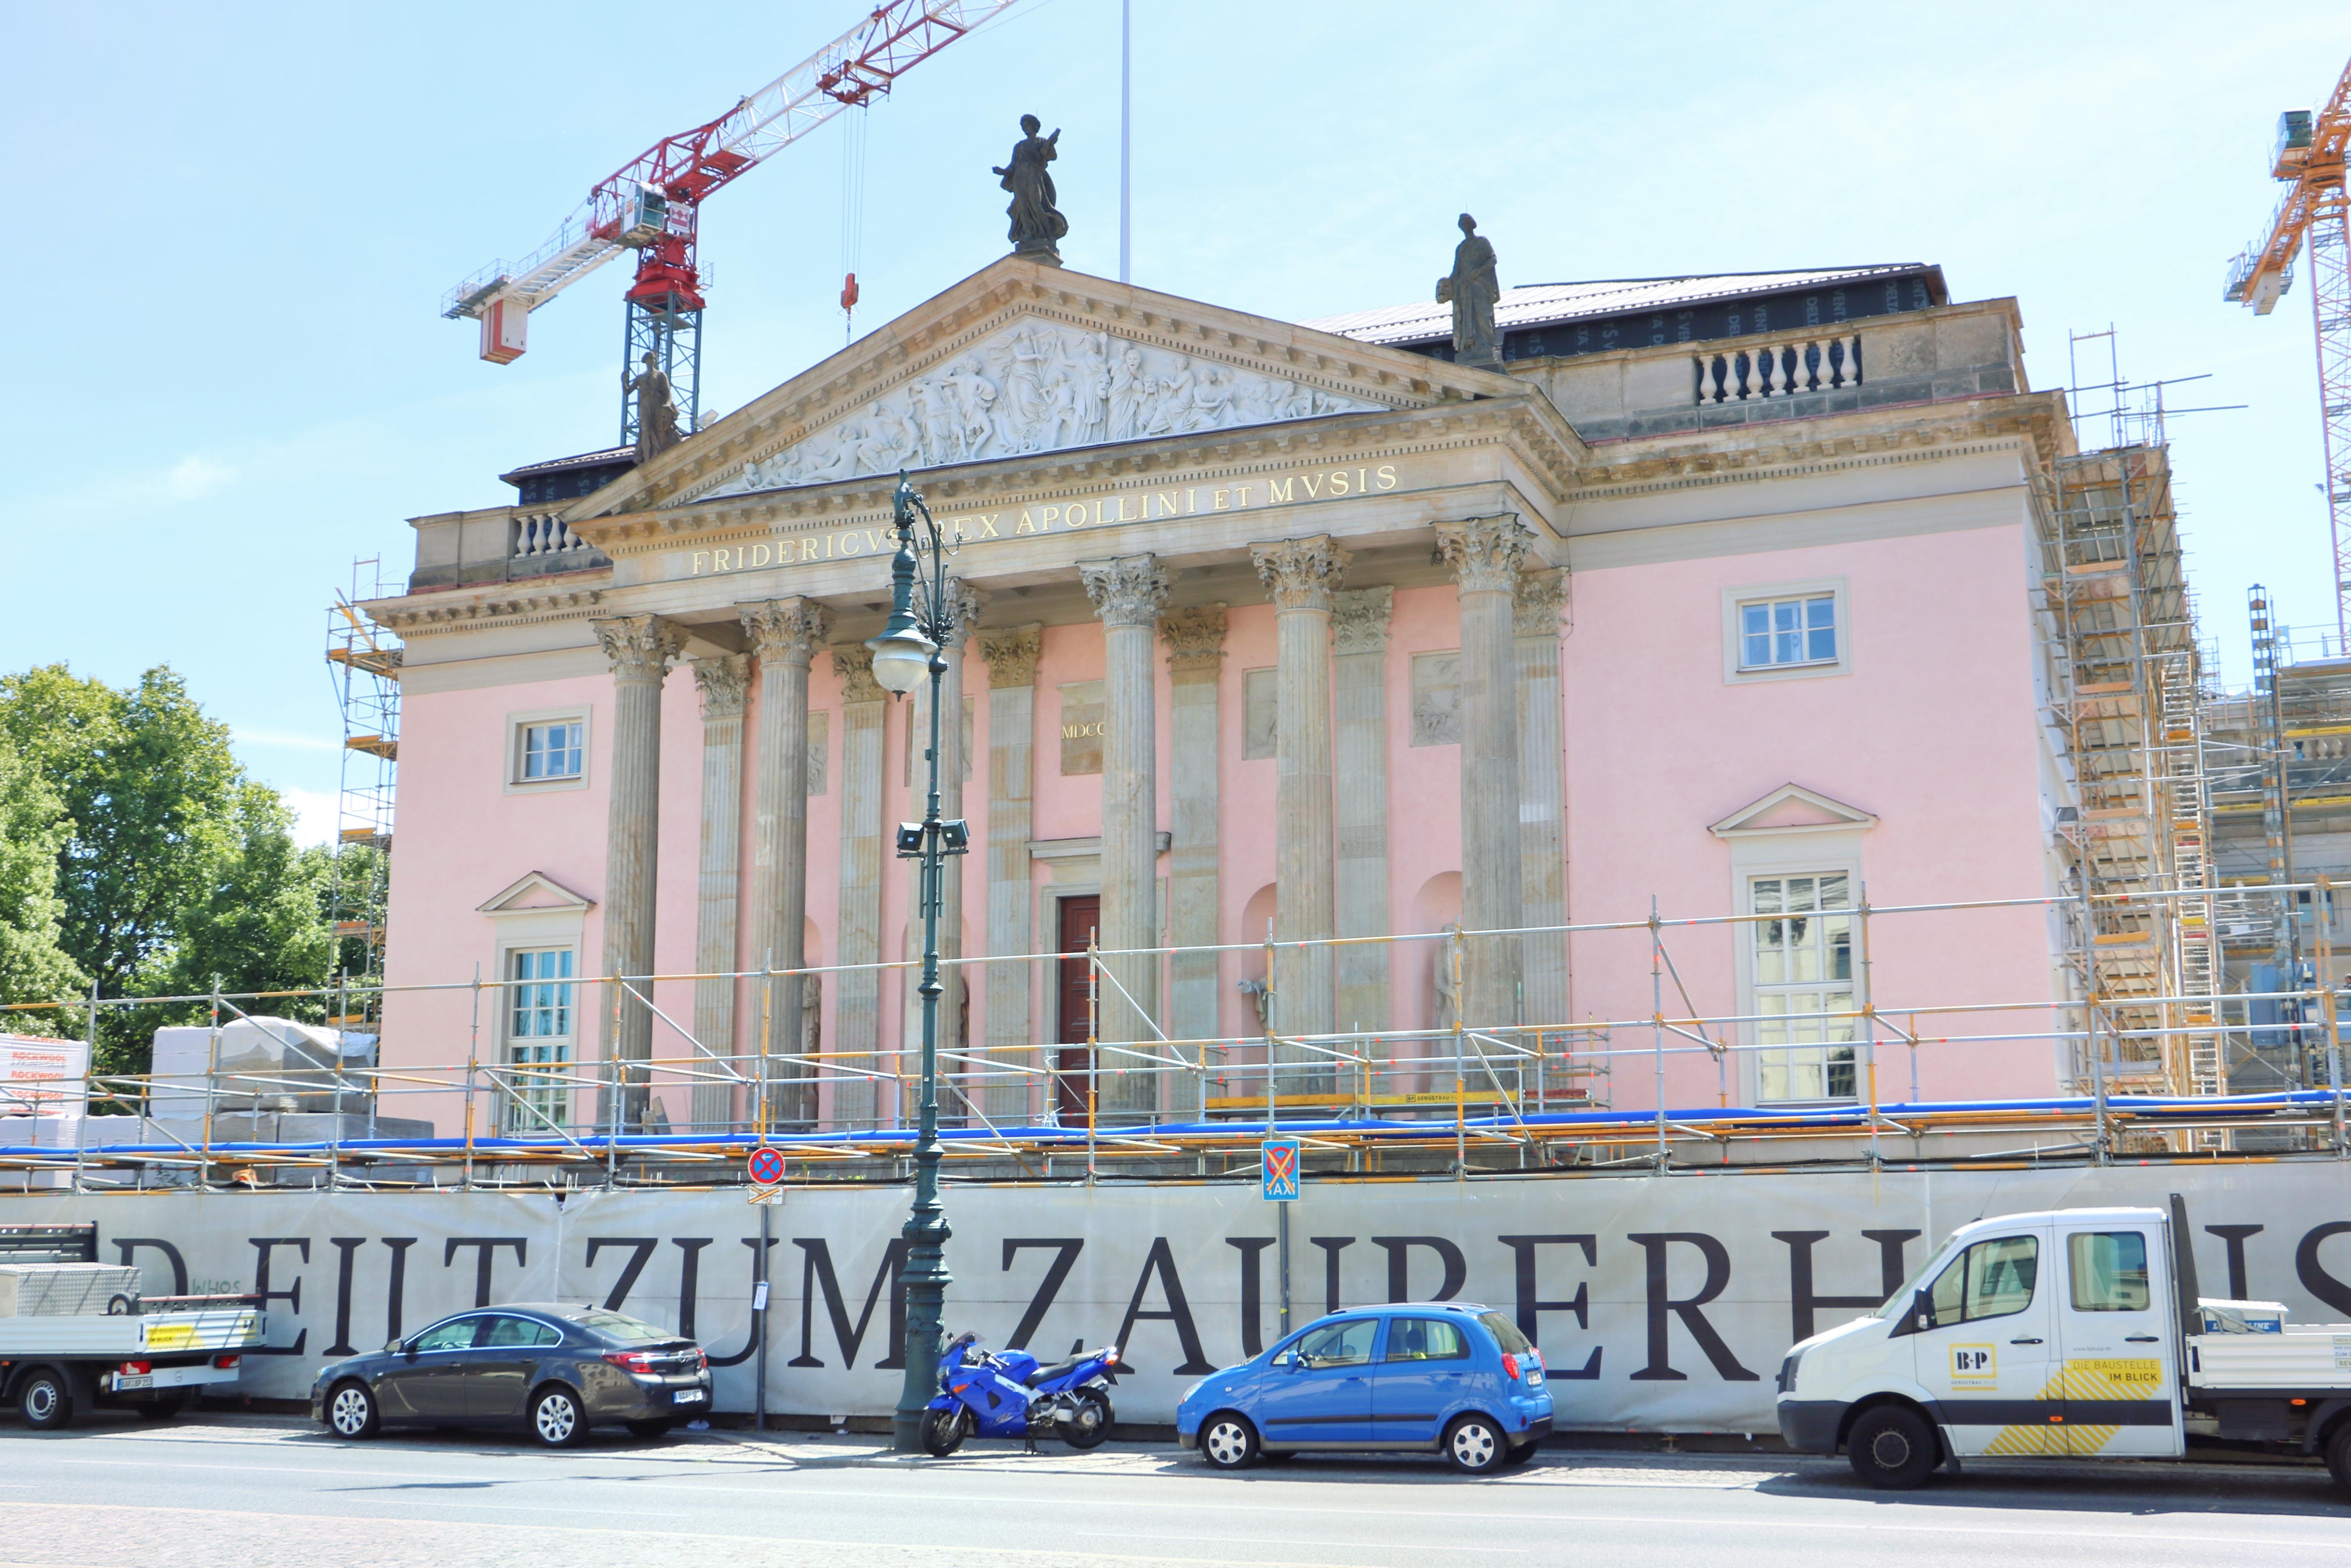 柏林德国国家歌剧院攻略 德国国家歌剧院门票价格多少钱 团购票价预定优惠 景点地址图片 携程攻略